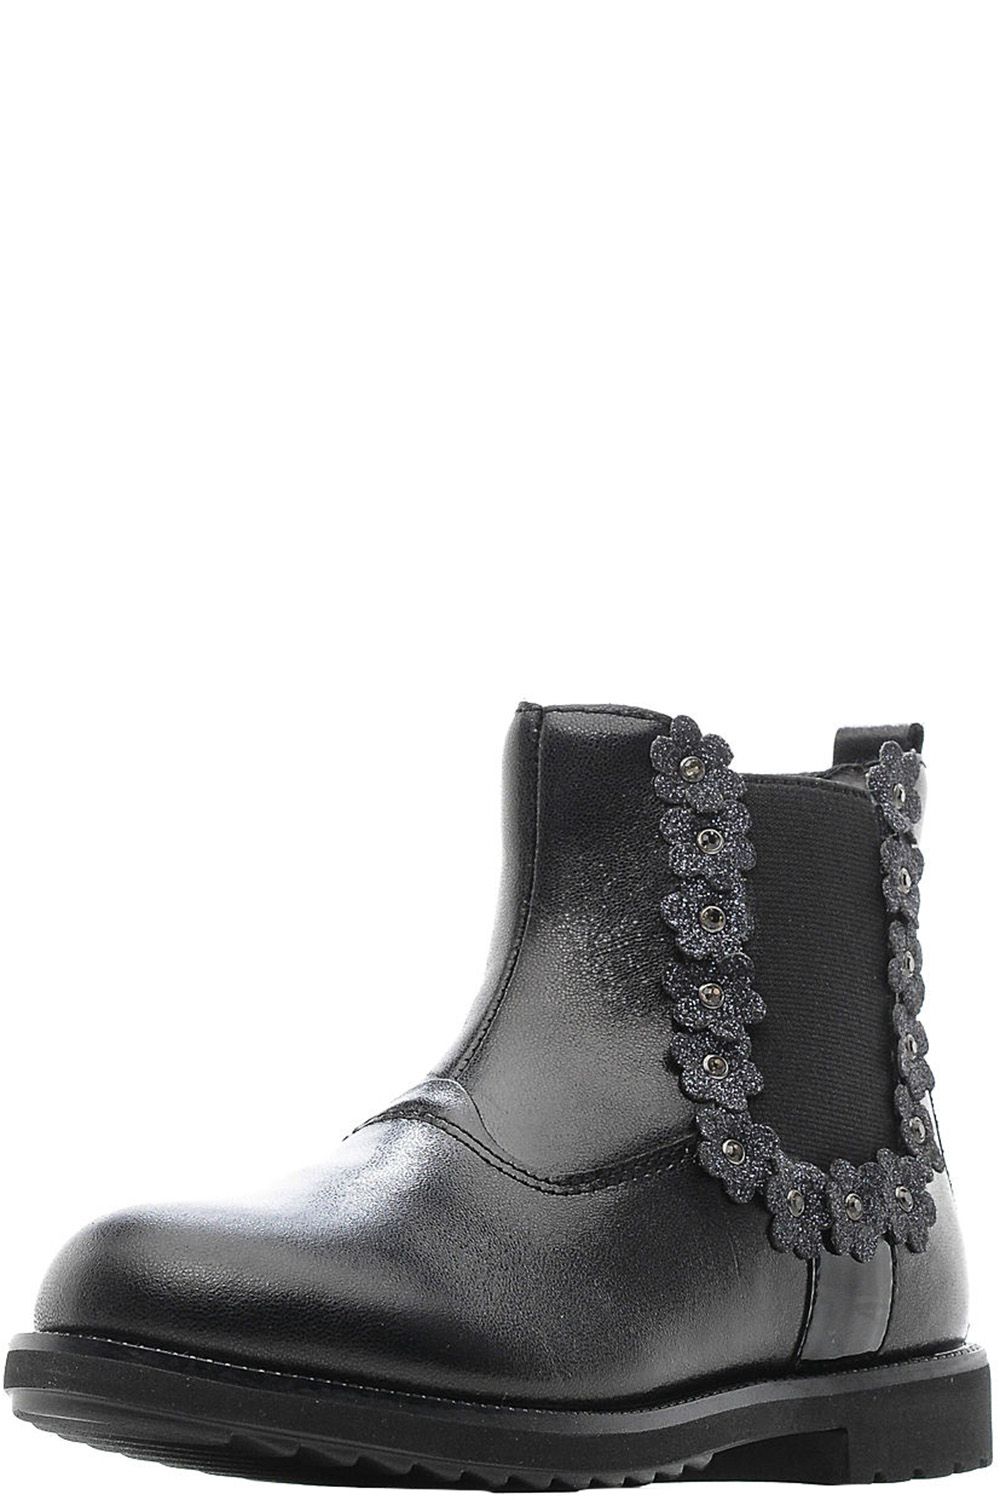 Ботинки Kapika, размер 33, цвет черный 53298y-1 - фото 1